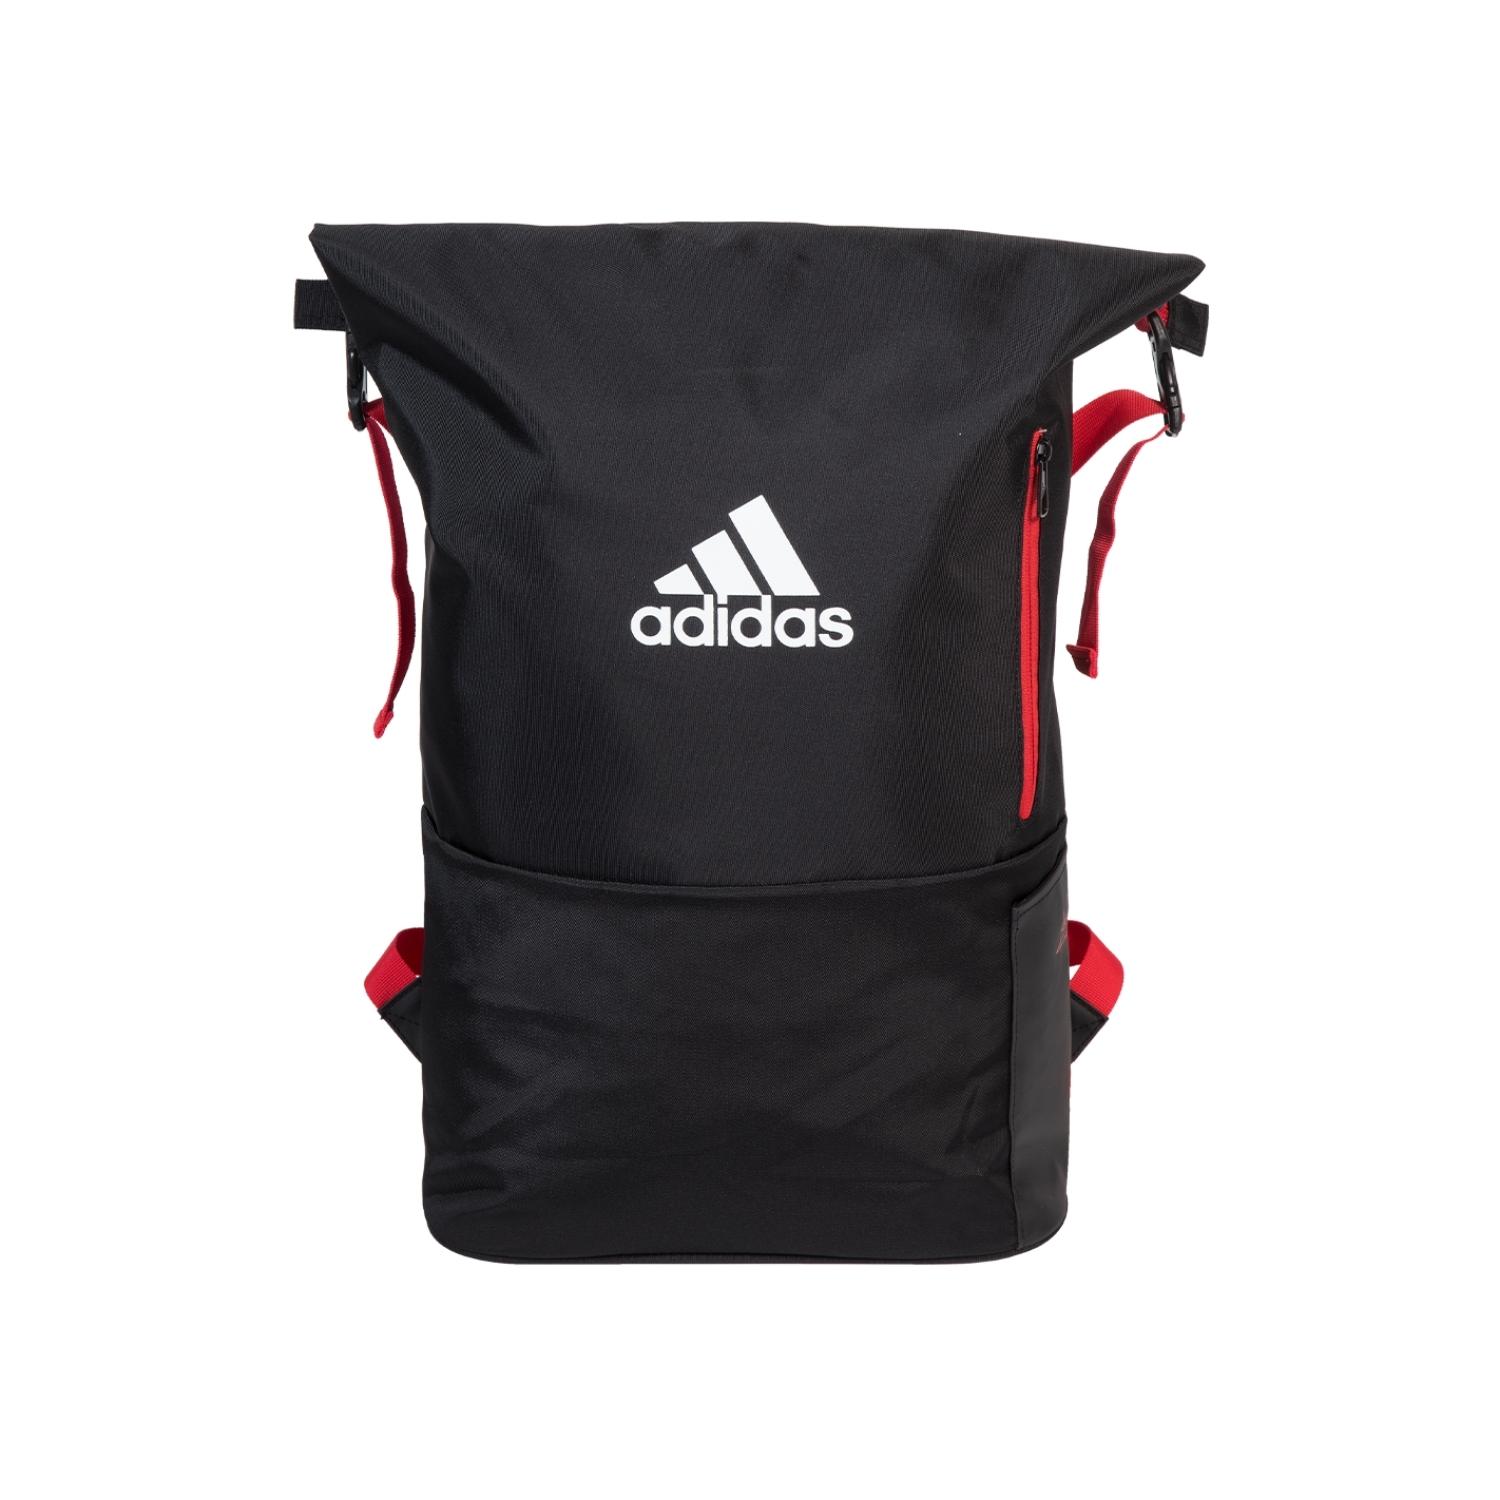 Adidas Backpack Multigame Stor padeltaske Lav pris